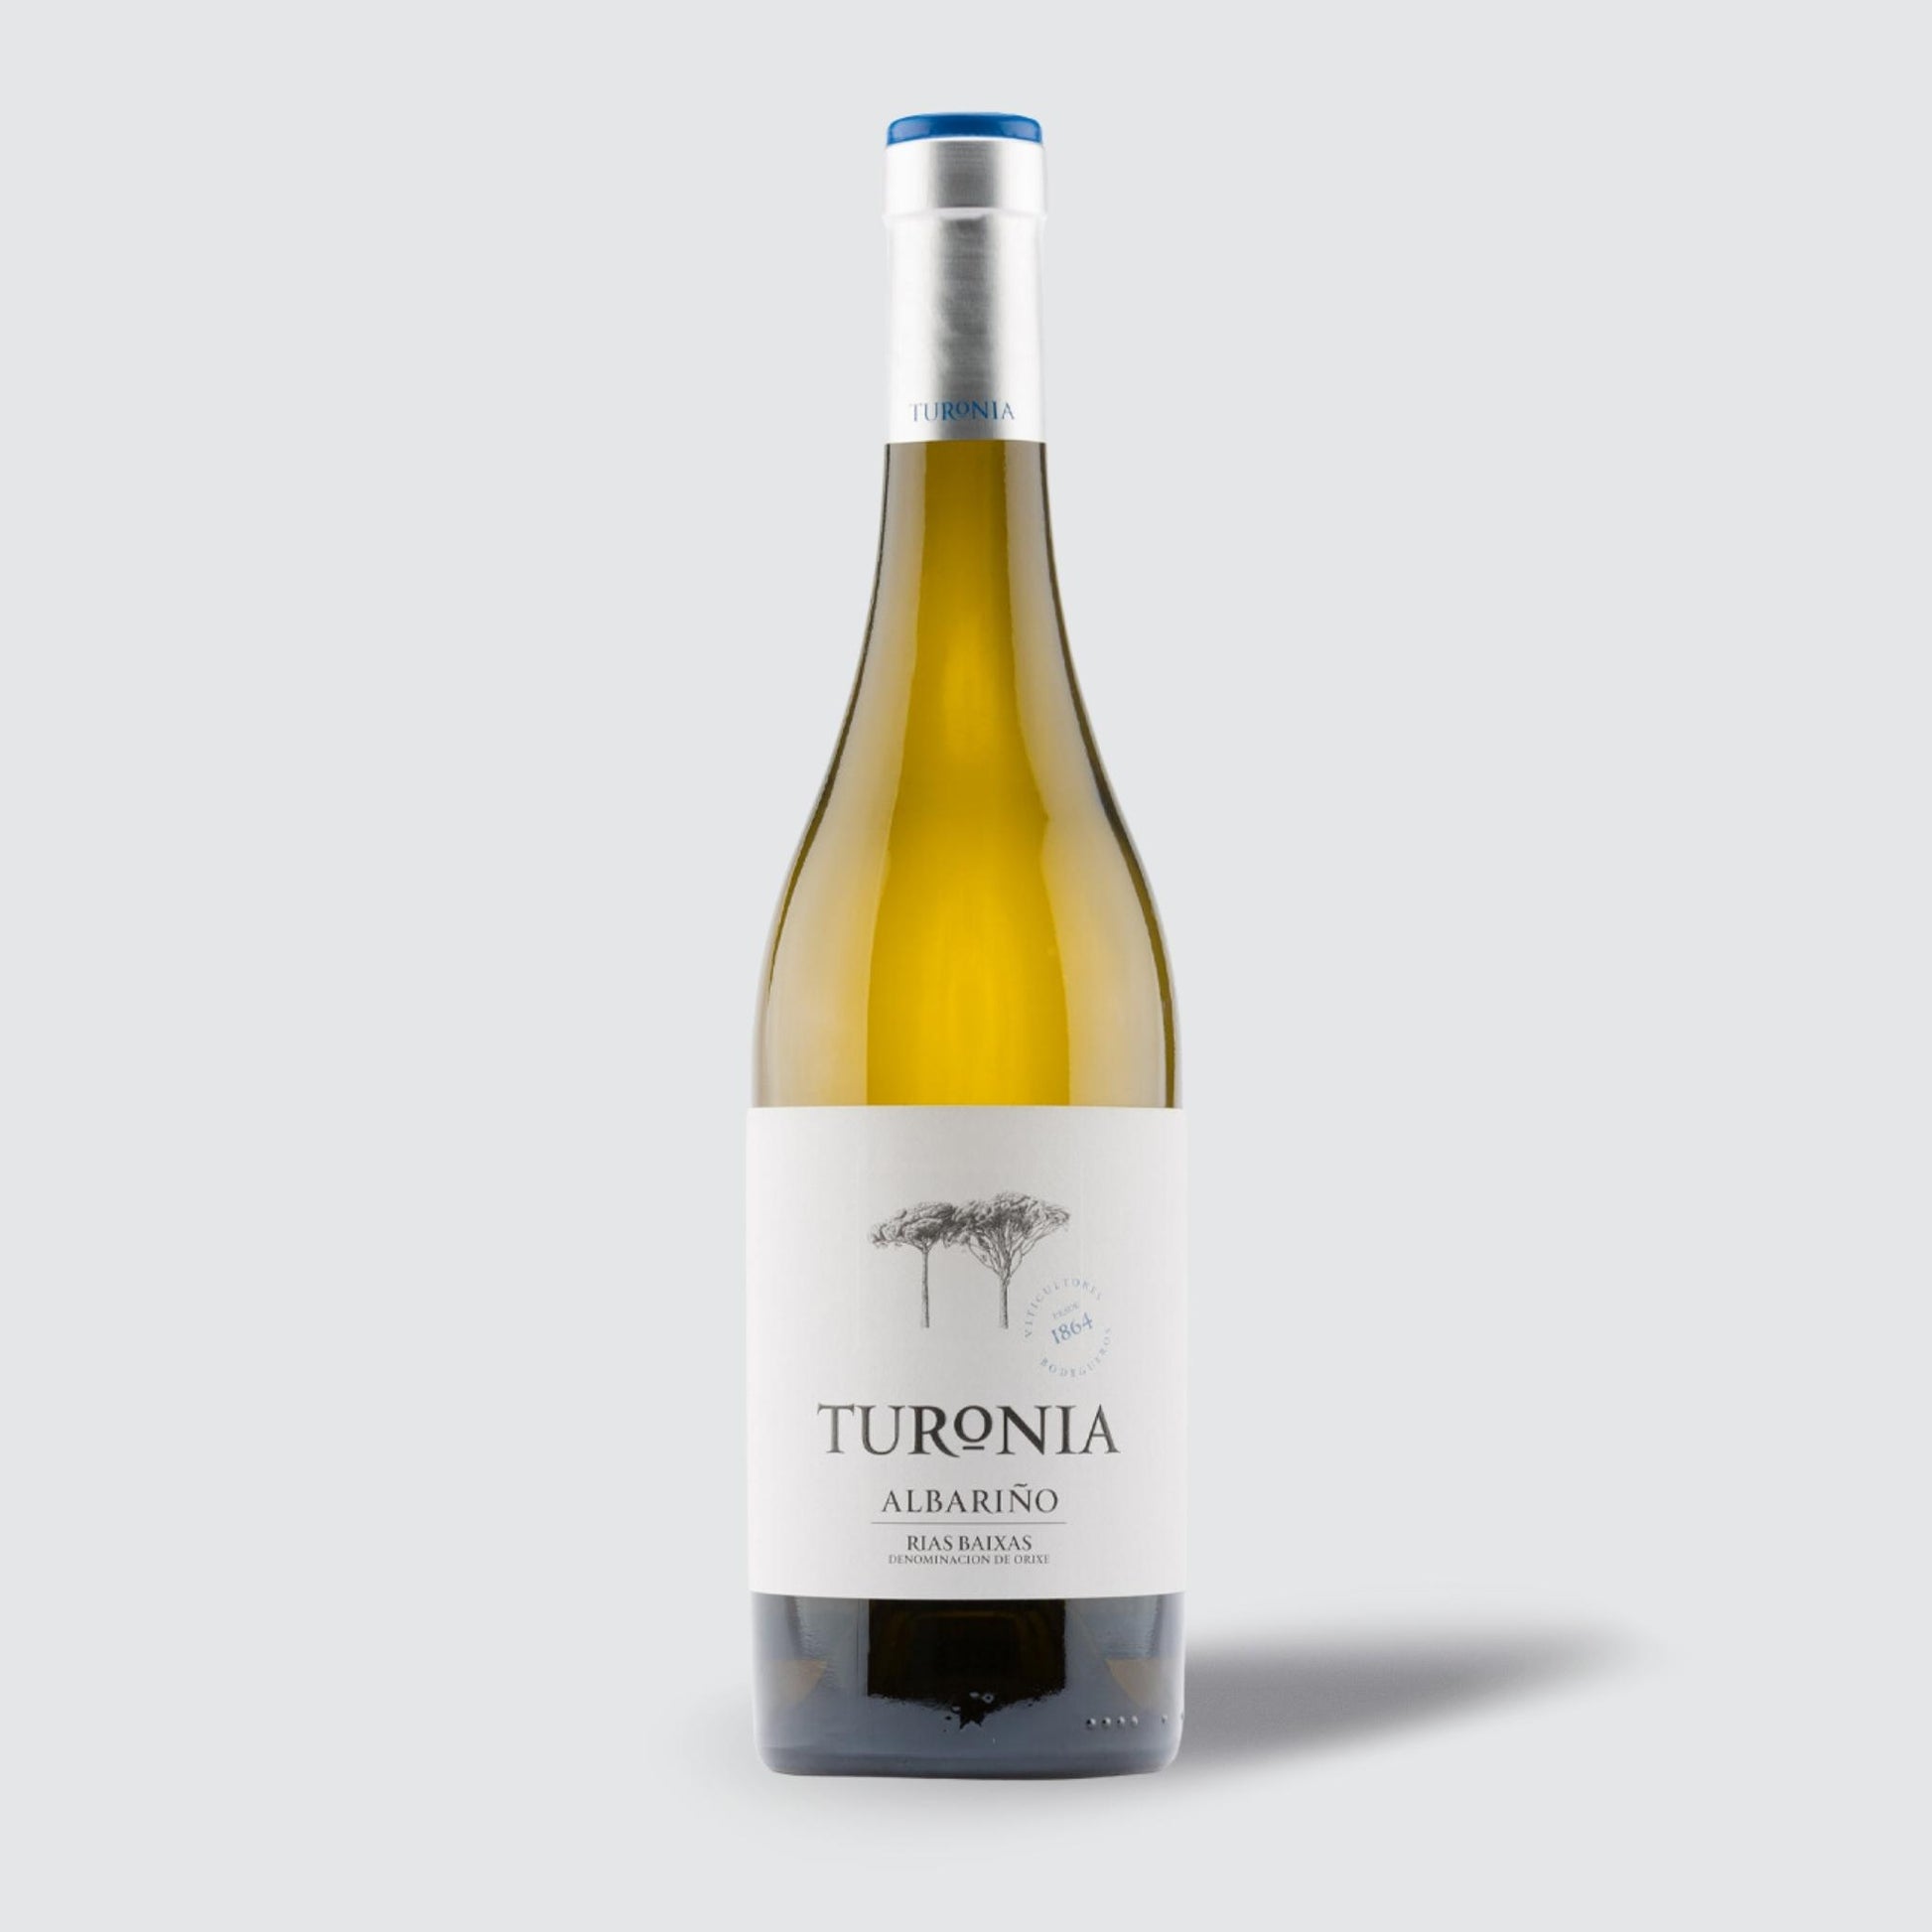 Bodegas Quinta de Couselo Turonia Albarino 2020 rias baixas white wine